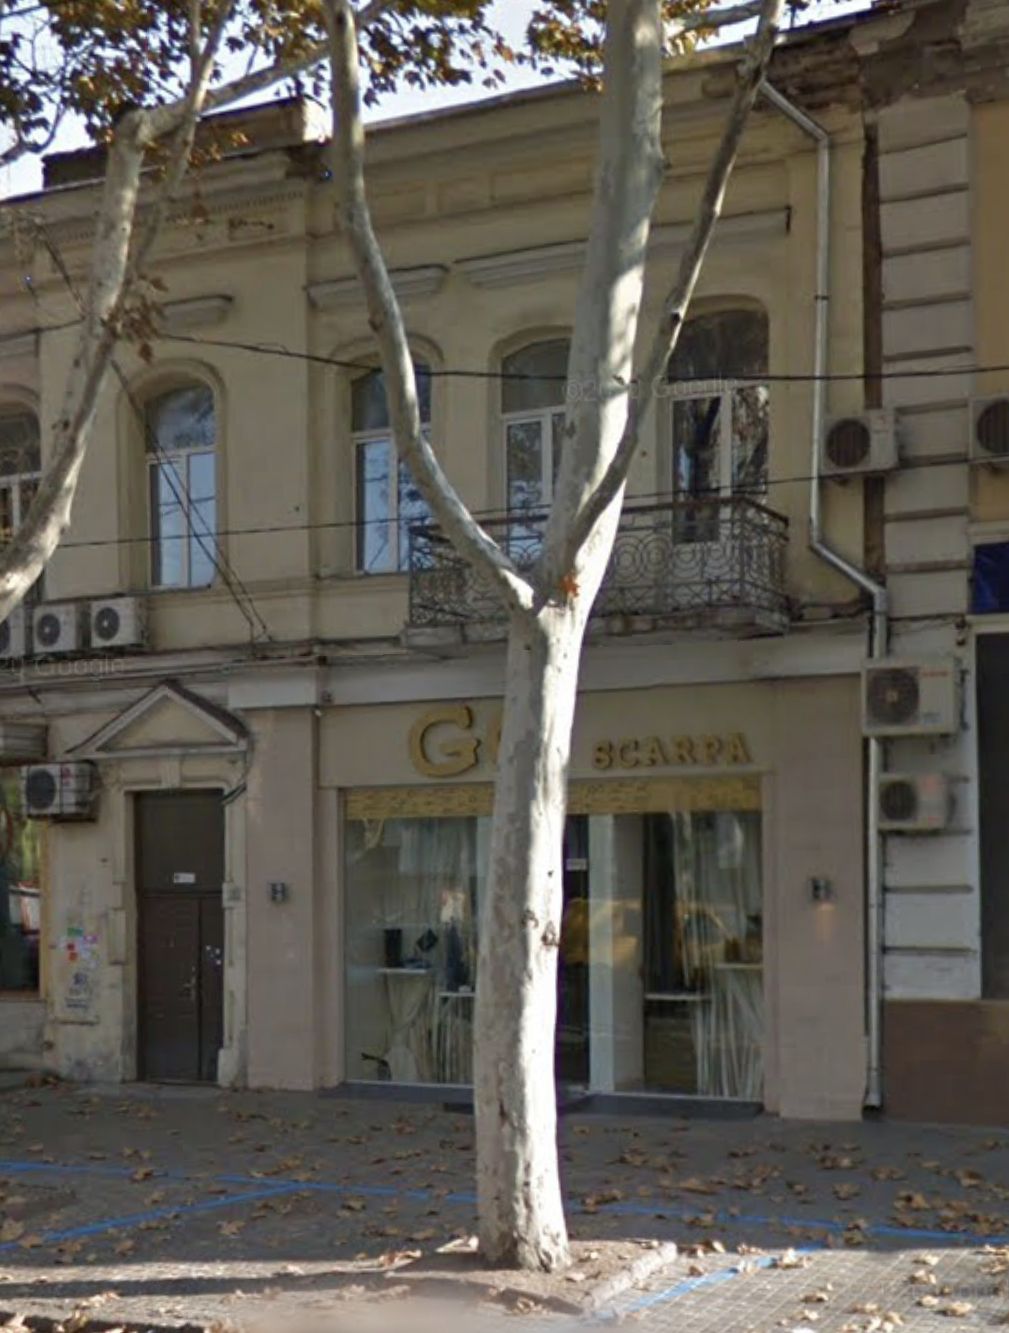 Аренда магазина на ул.Ришельевская. 66 кв.м, торговый зал 40 кв.м